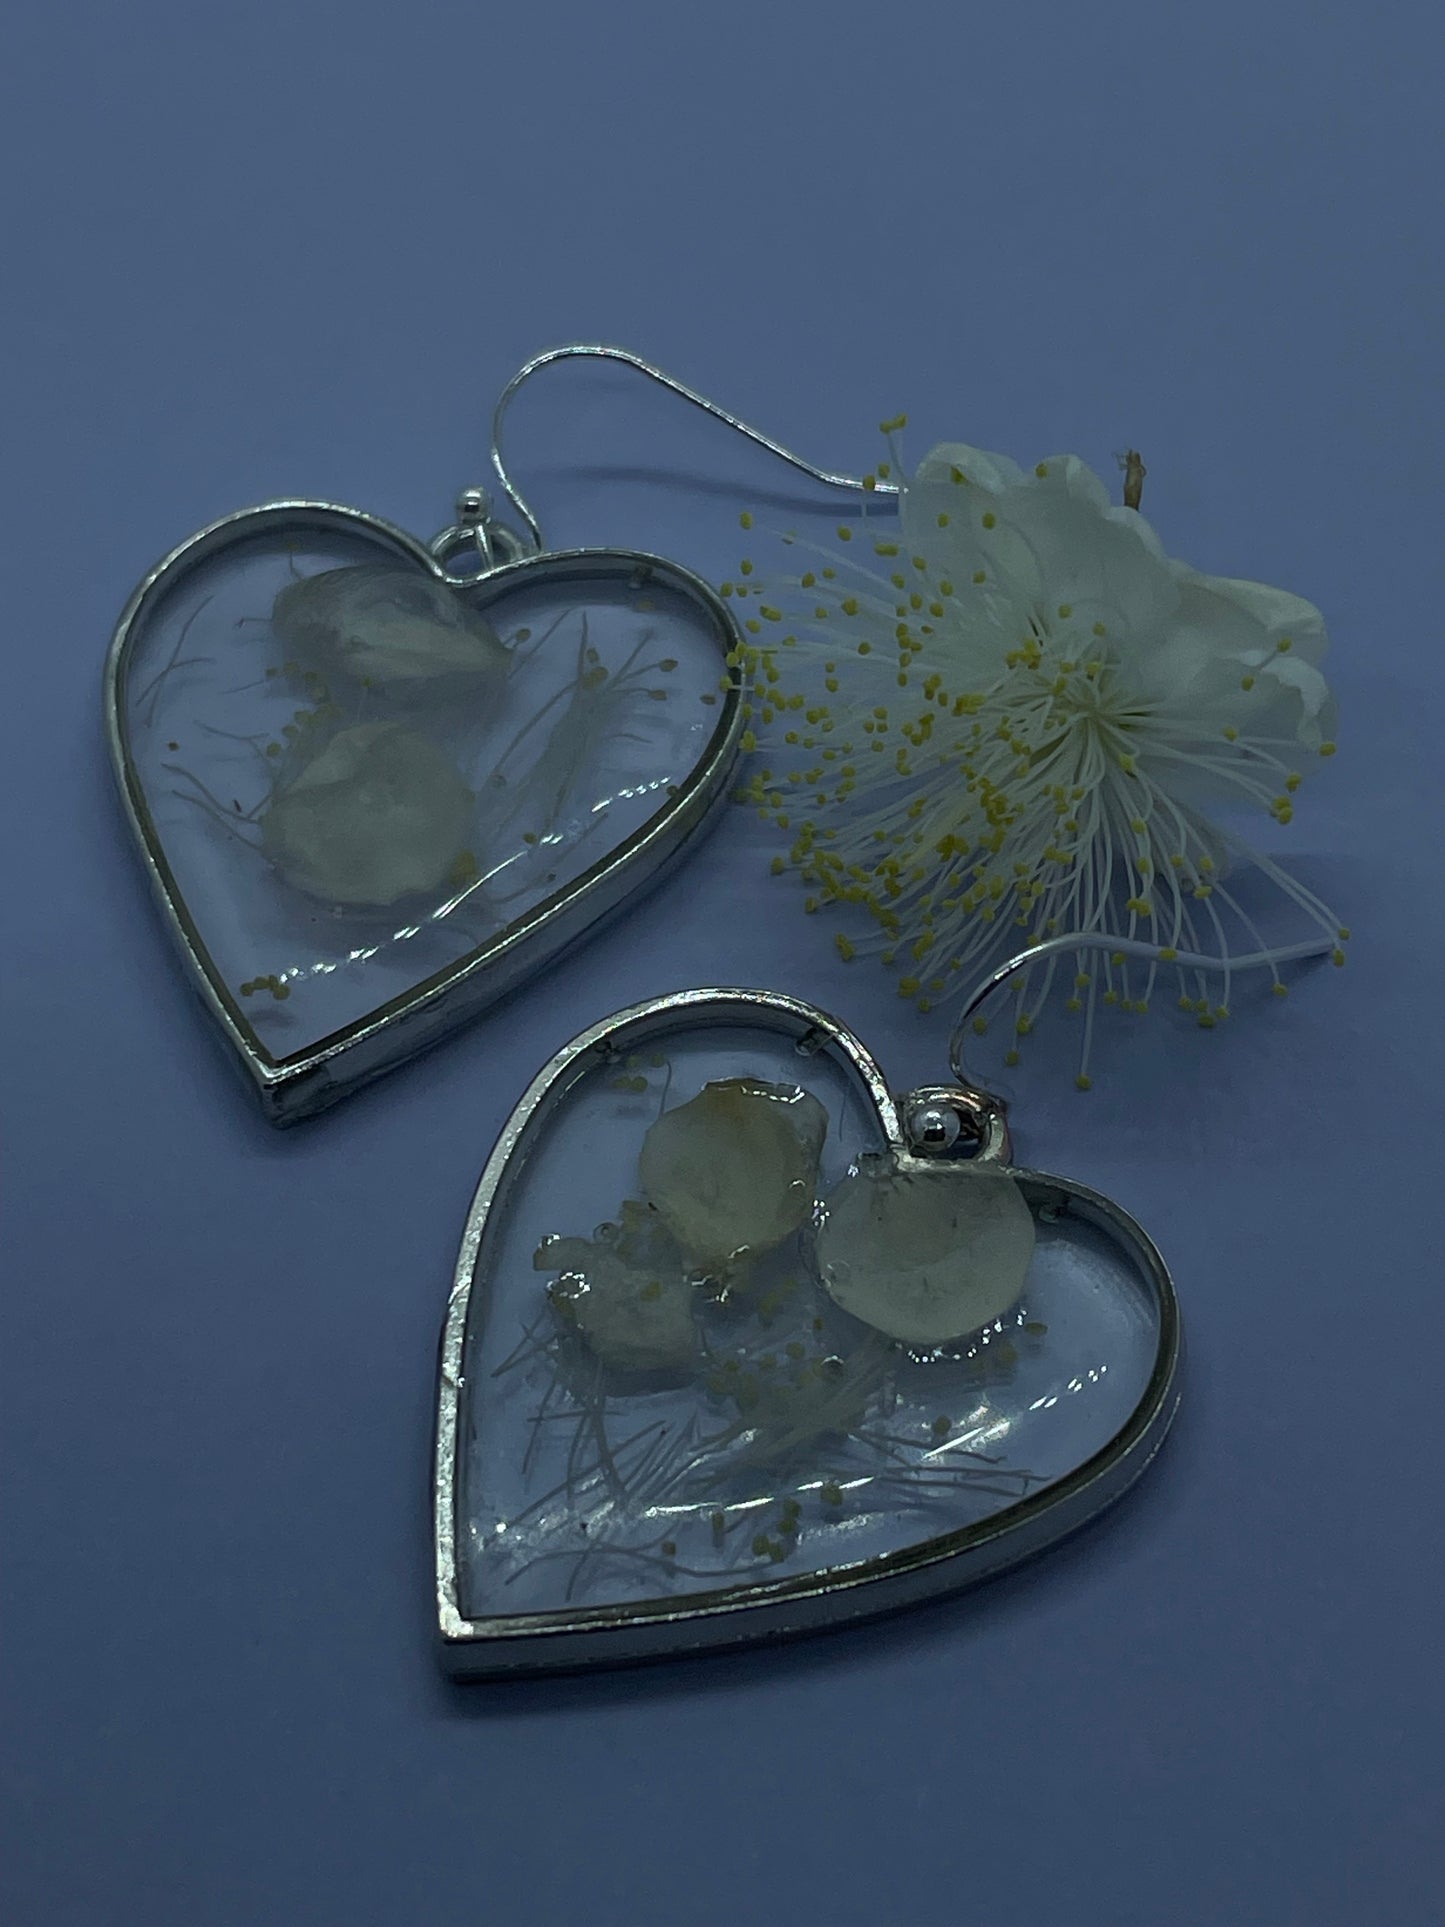 Myrtle & resin heart earrings